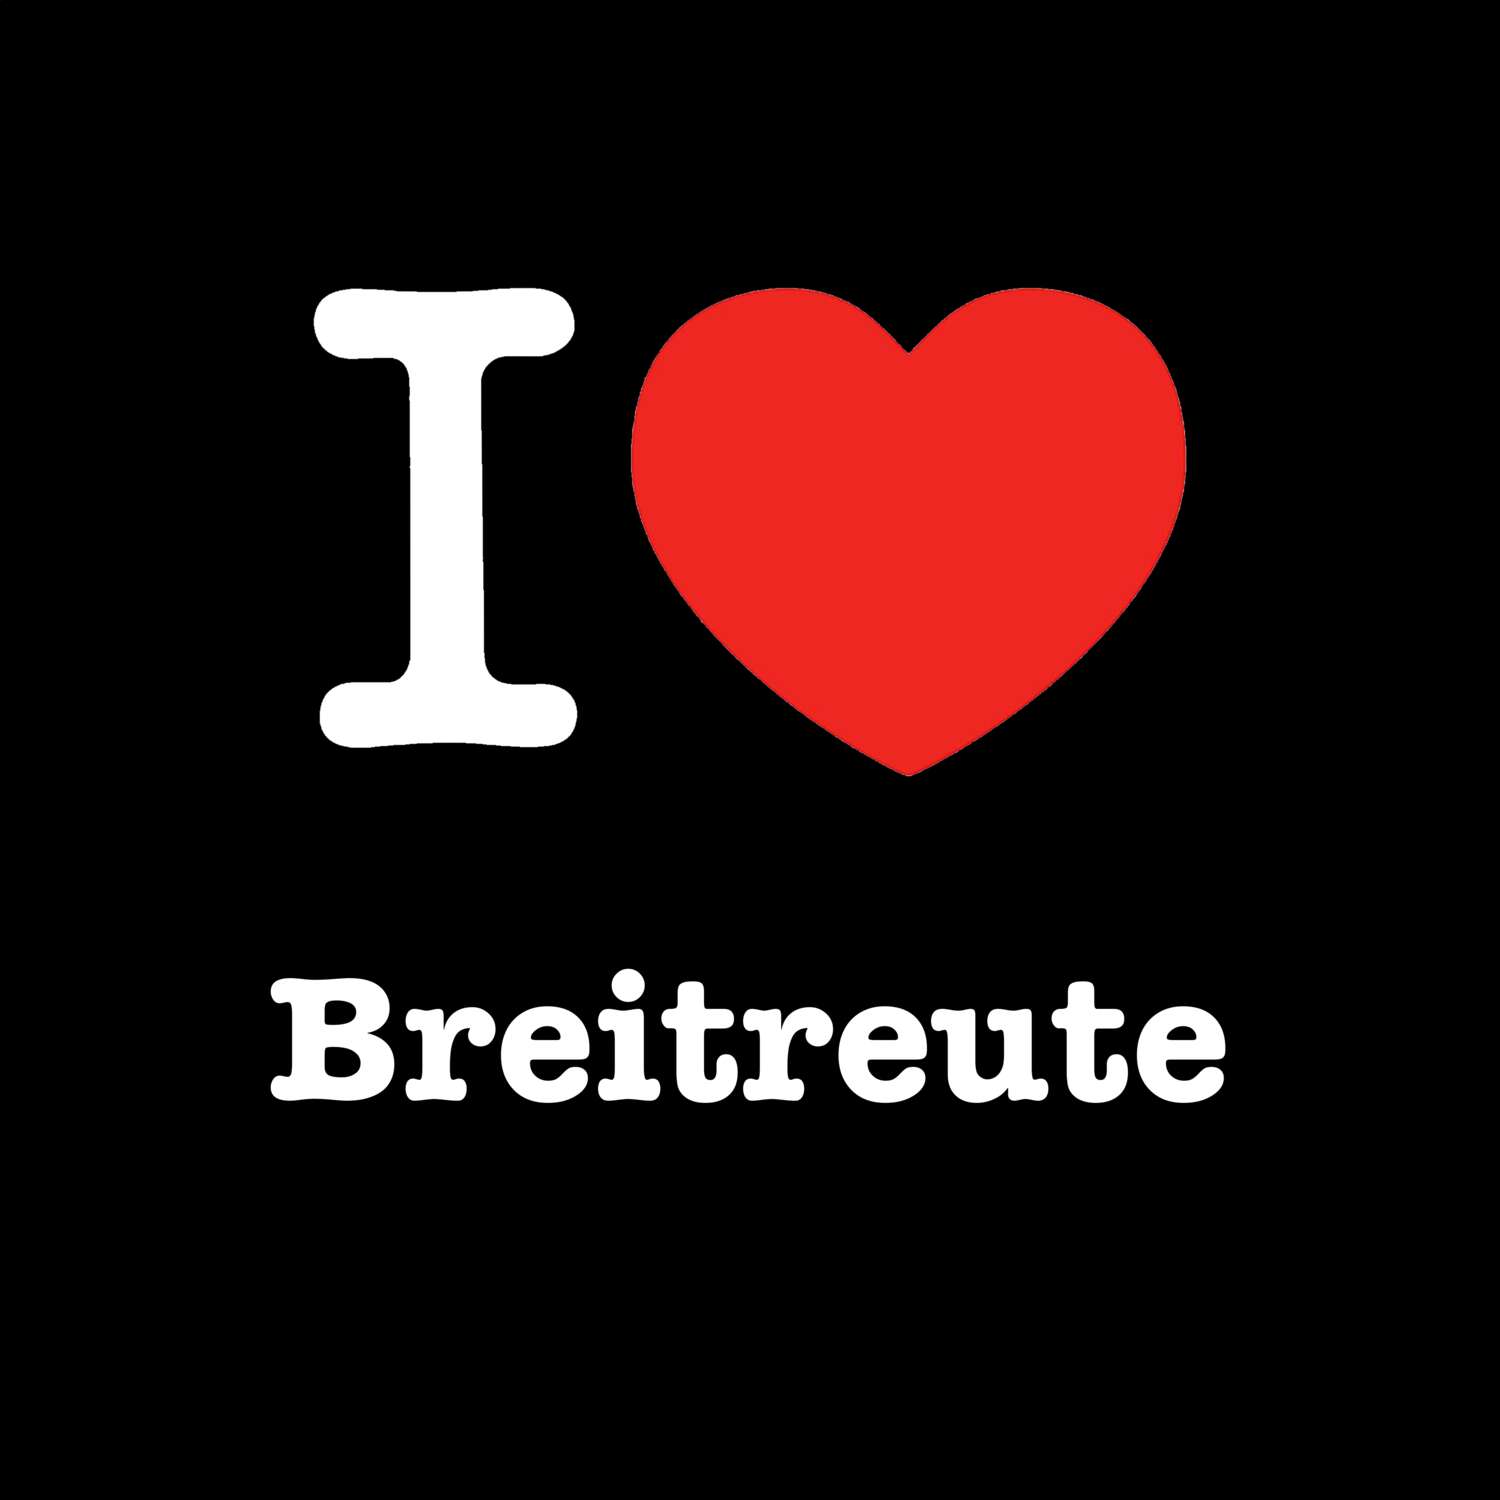 Breitreute T-Shirt »I love«